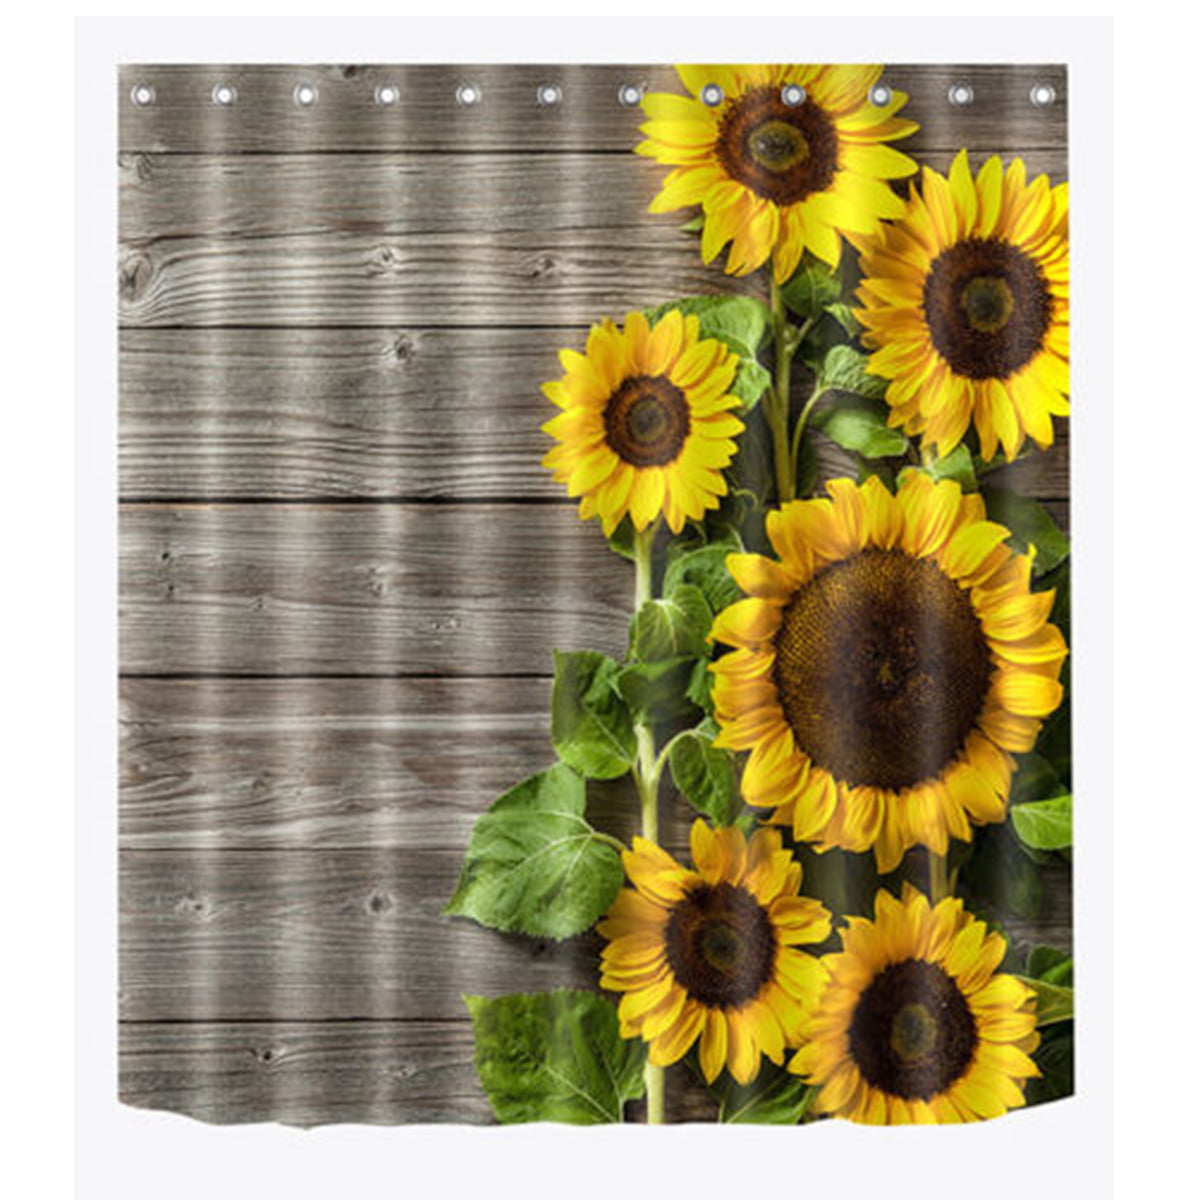 Bathroom Shower Curtain Sunflower on vintage wood Waterproof Fabric & Hooks 71" 